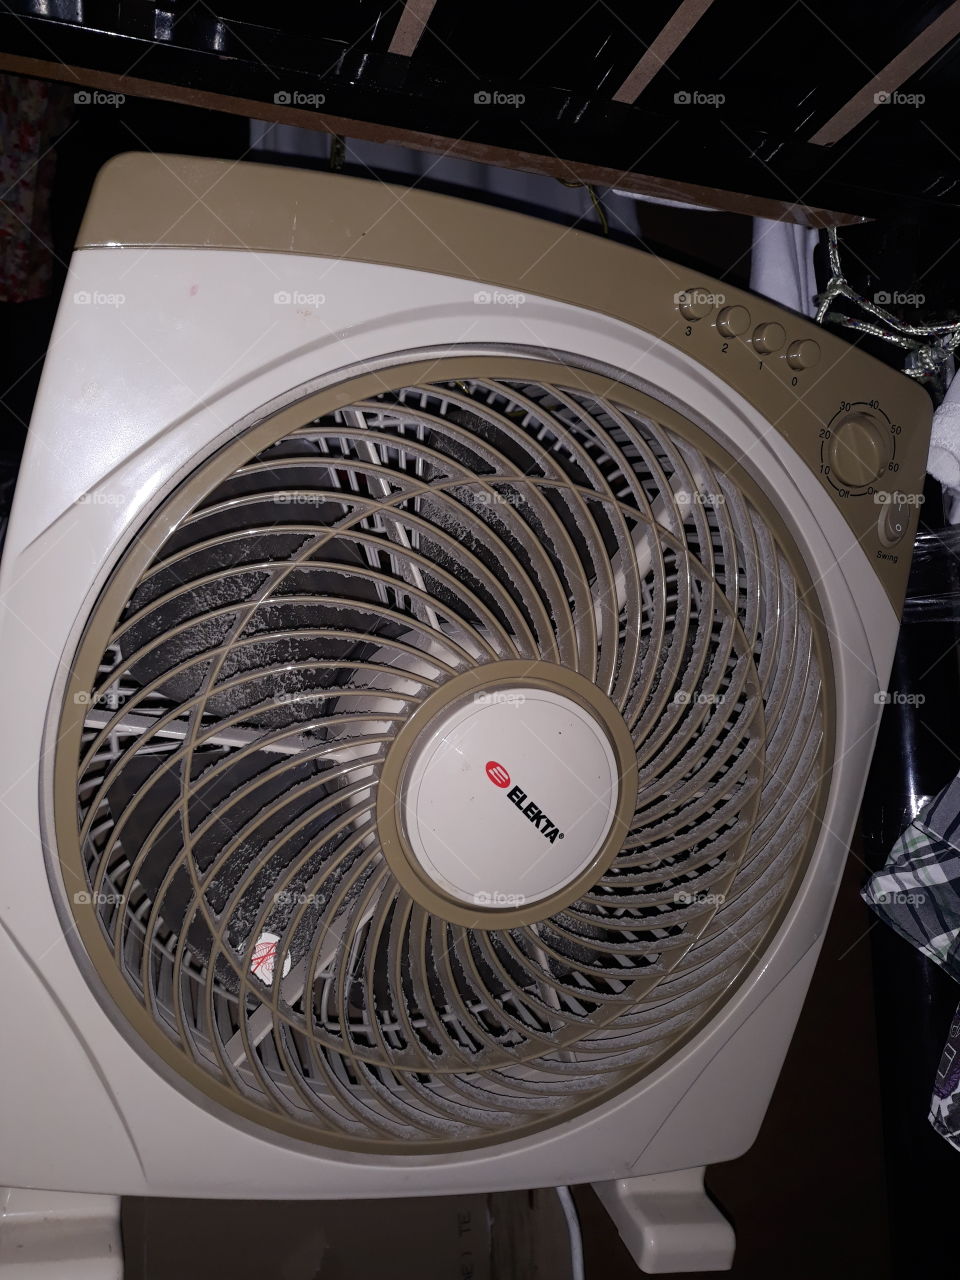 my fan